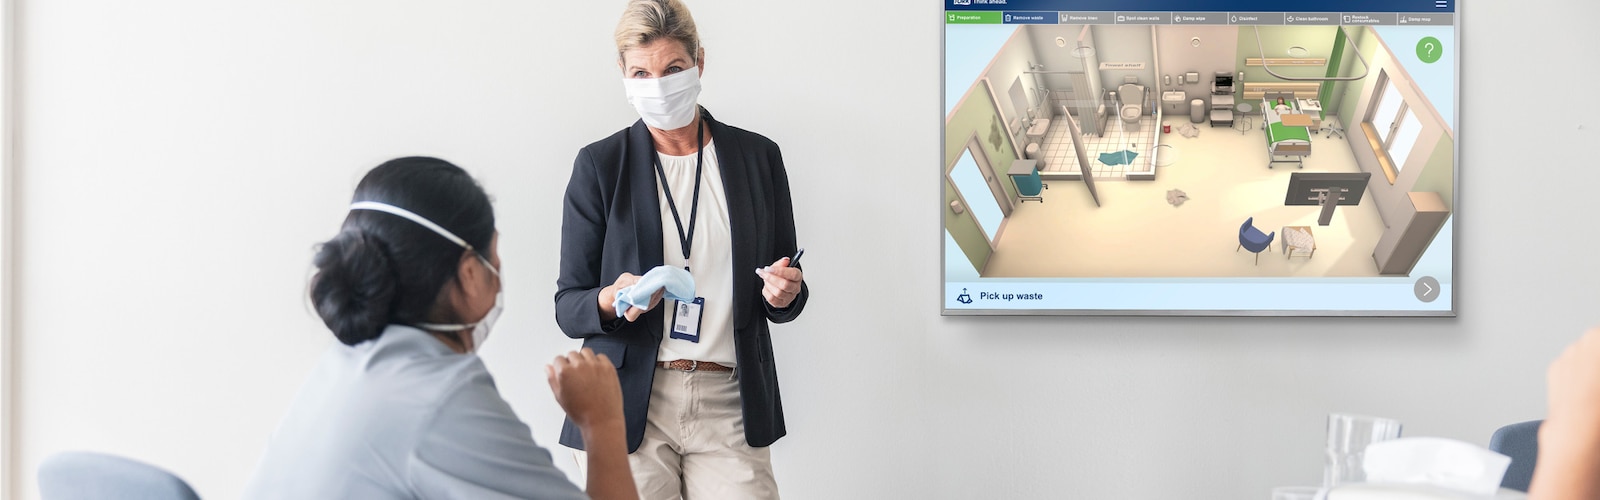 Formation interactive sur le nettoyage d’un hôpital de Tork 